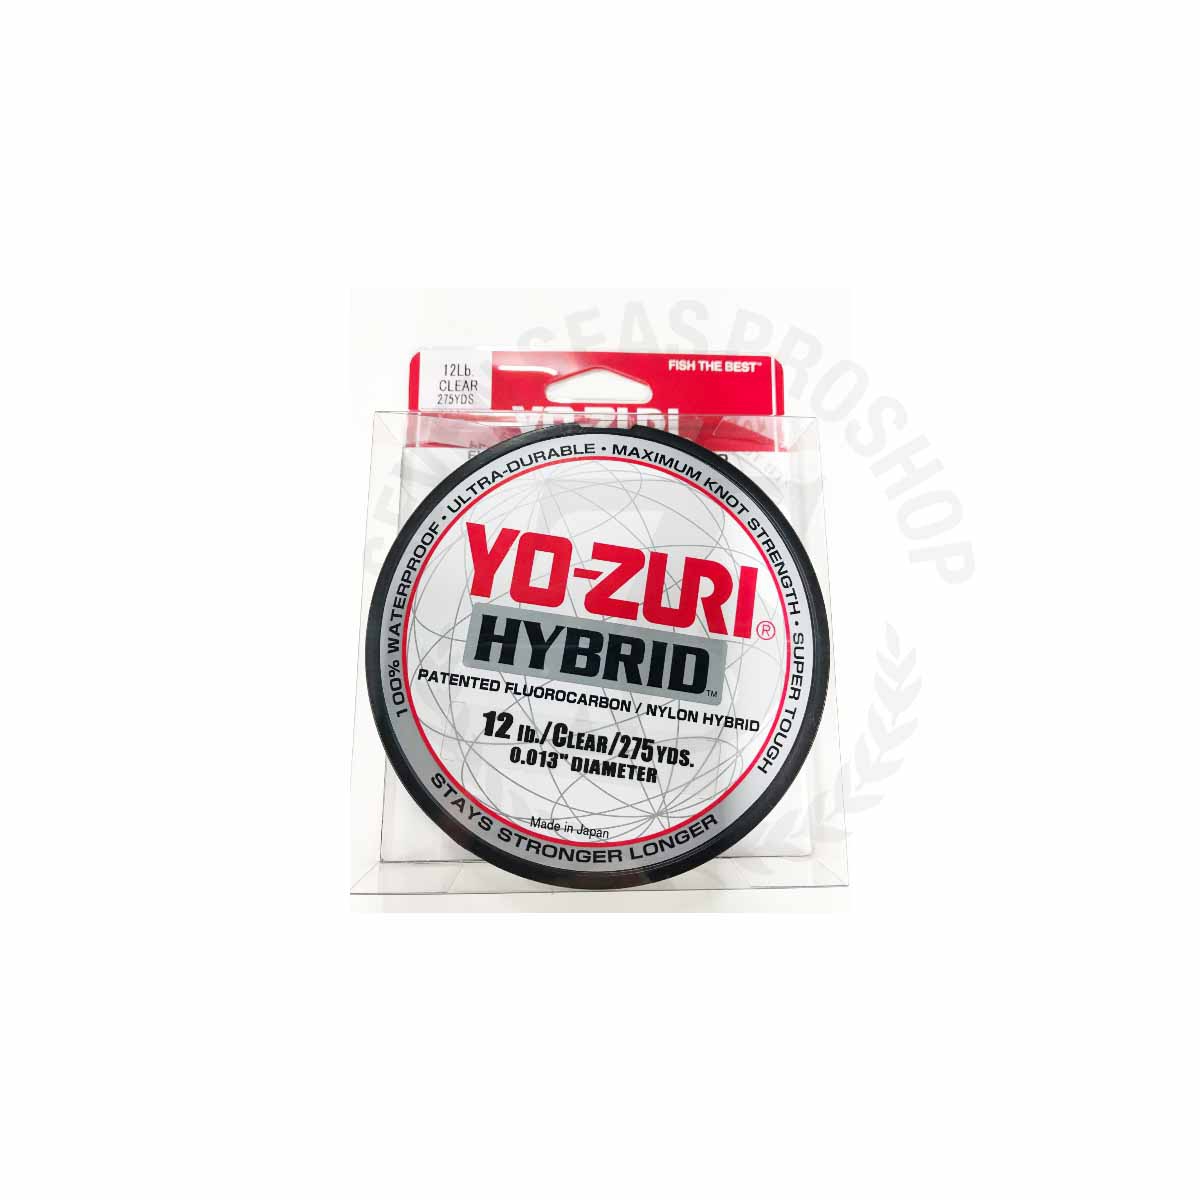 Yo-Zuri Hybrid 275Yd Clear #12lb*สายลีดฟลูออโรคาร์บอน - 7 SEAS PROSHOP  (THAILAND)